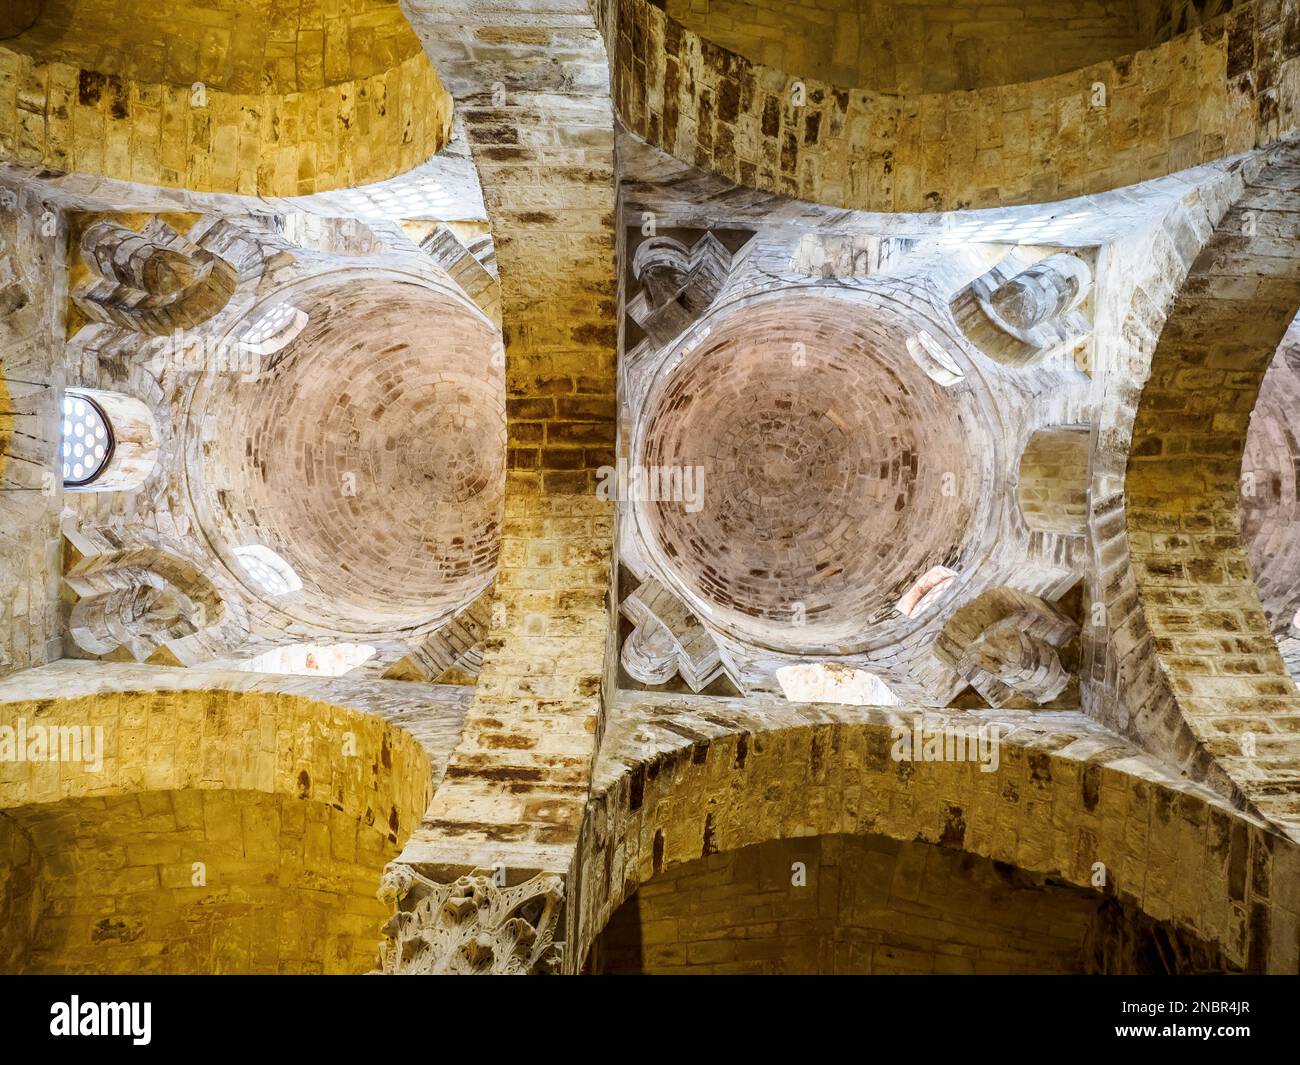 Zentrales Schiff, erhabene halbkuppelförmige Kuppeln, die auf Trommeln liegen, gestützt von Säulen. Die mit konzentrischen Ringen in Sandsteinaschern gebauten Kappen in der arabisch-normannischen Architekturkirche San Cataldo - Palermo, Sizilien, Italien Stockfoto